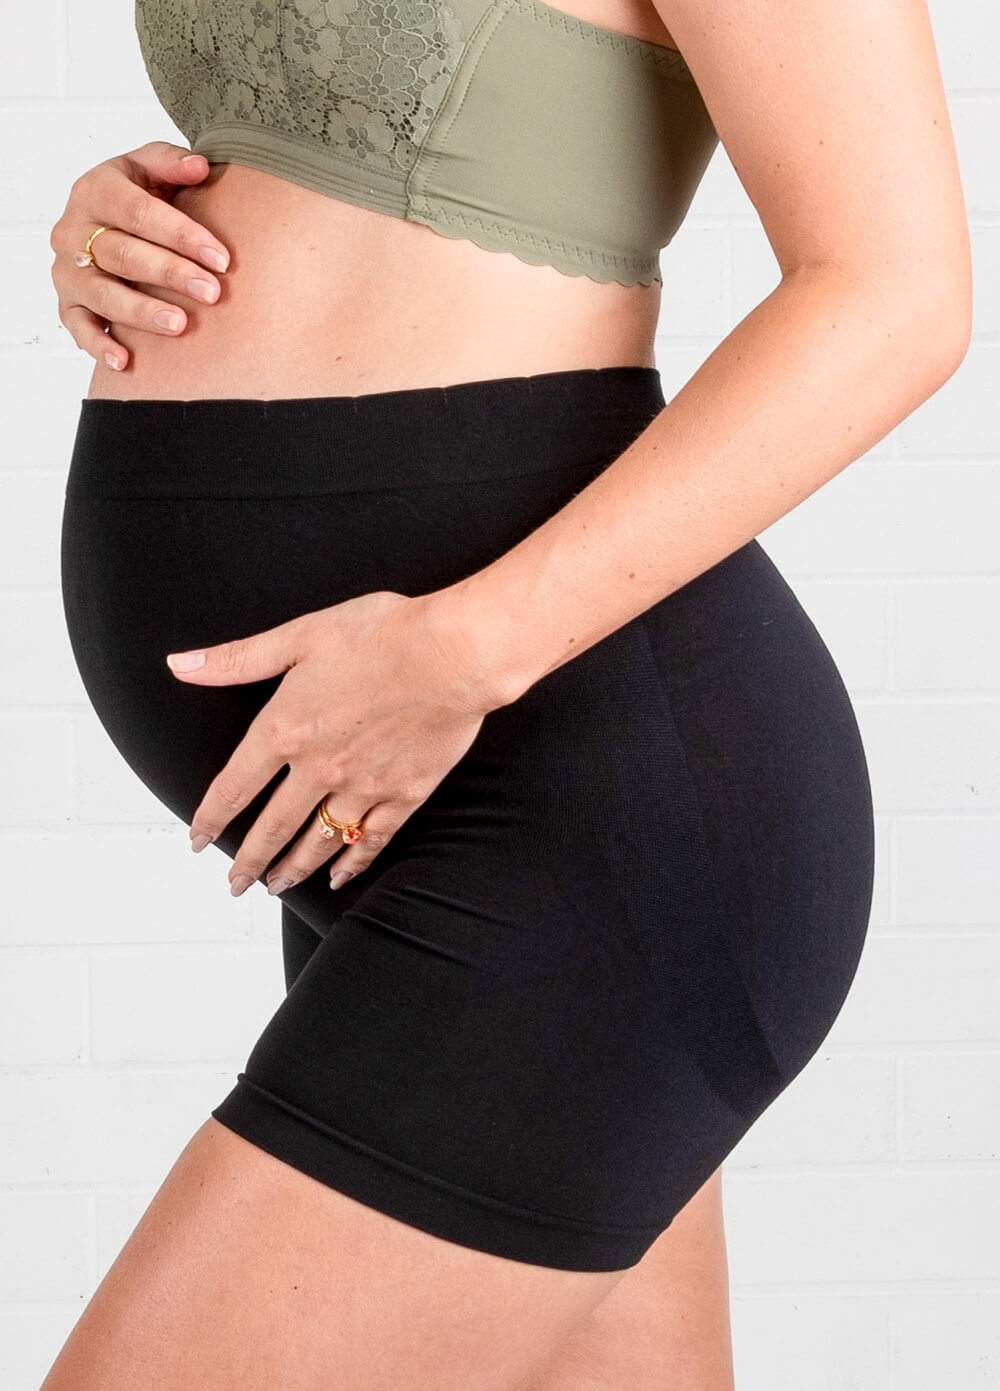 Queen Bee - Katie Over Bump Maternity Under wear Shorts in Black